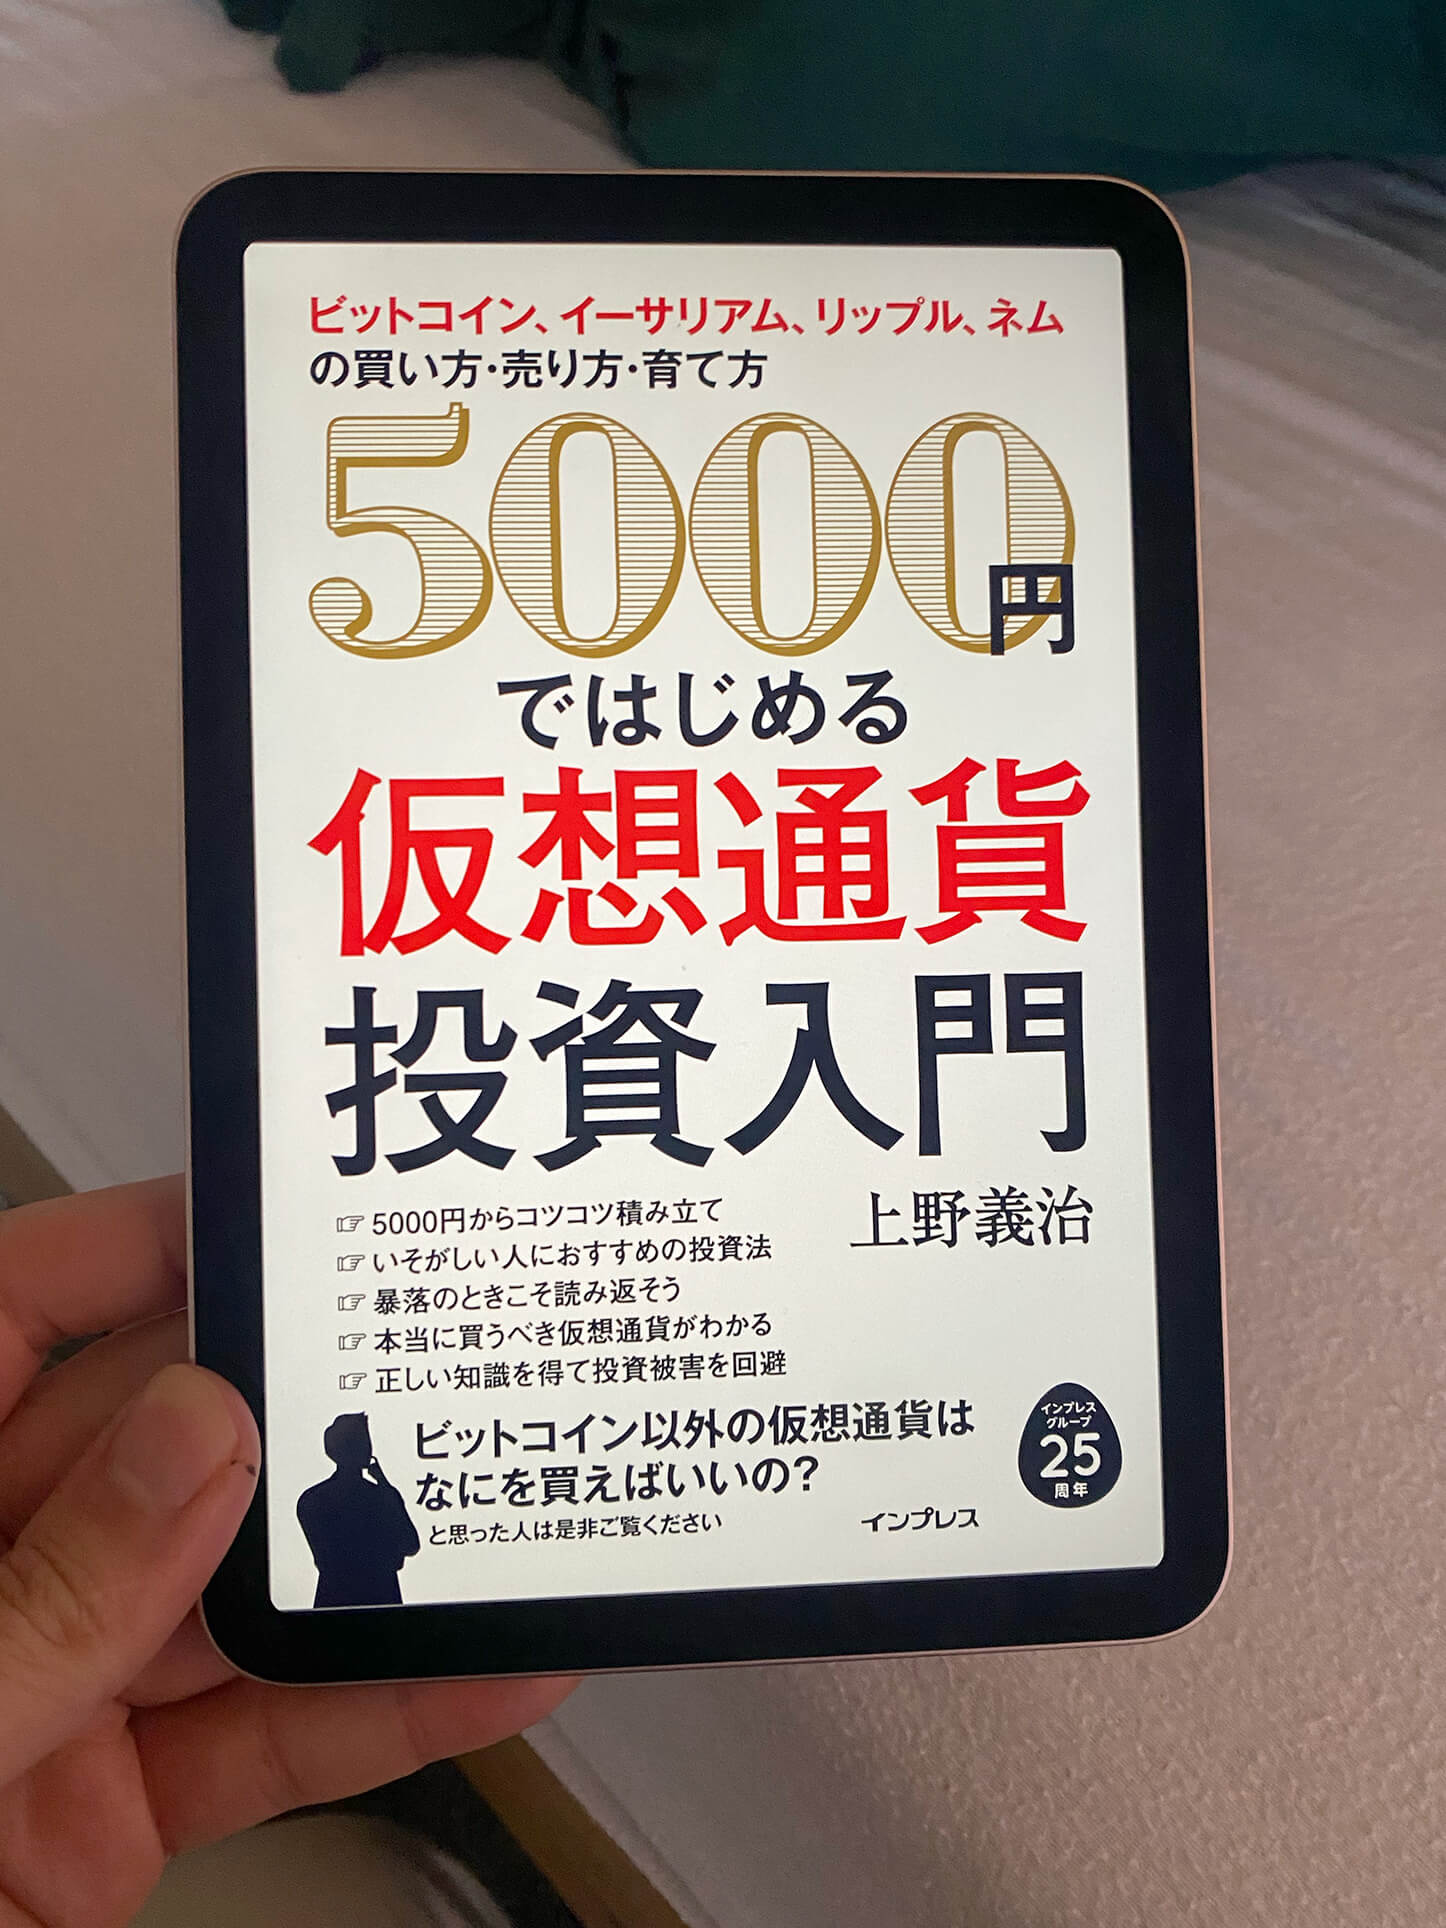 書籍5000 円ではじめる仮想通貨投資入門(上野義治/インプレス)」の表紙画像